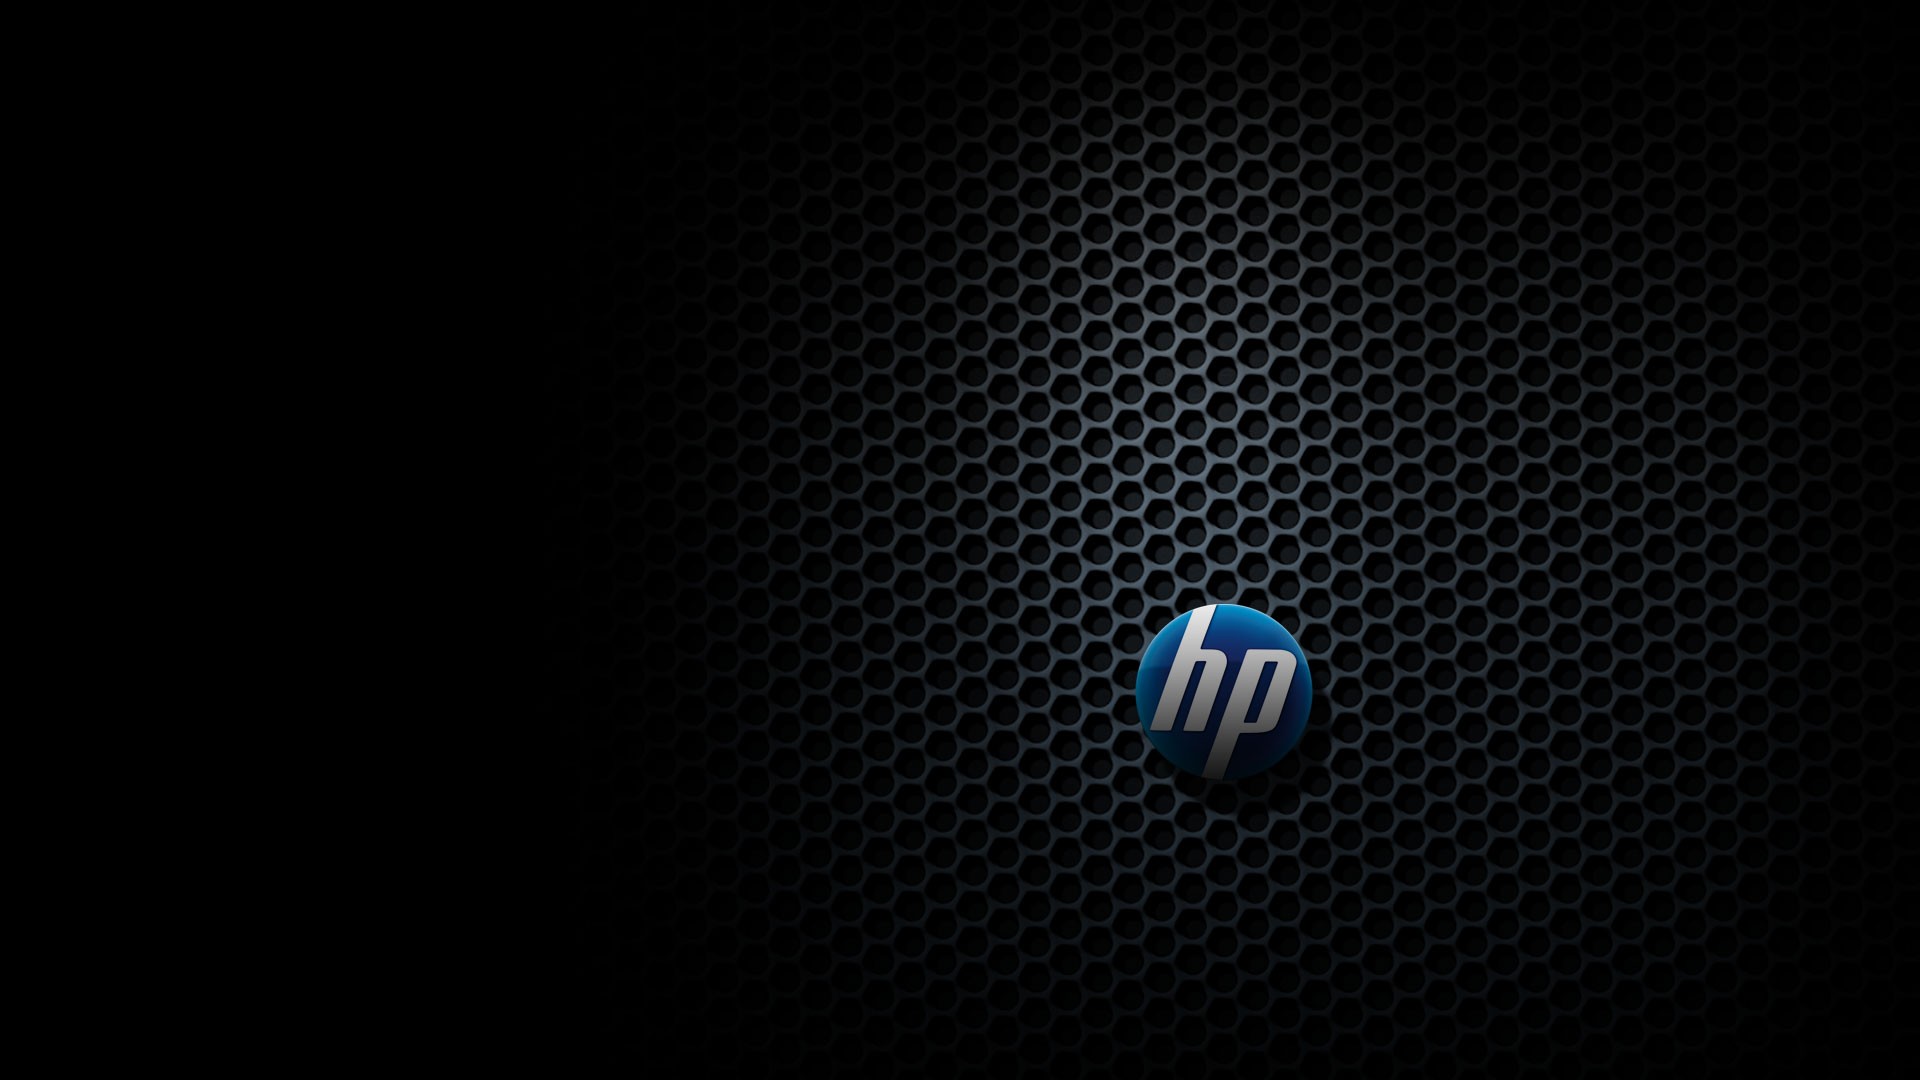  HP  wallpaper    Download free beautiful full HD wallpapers  